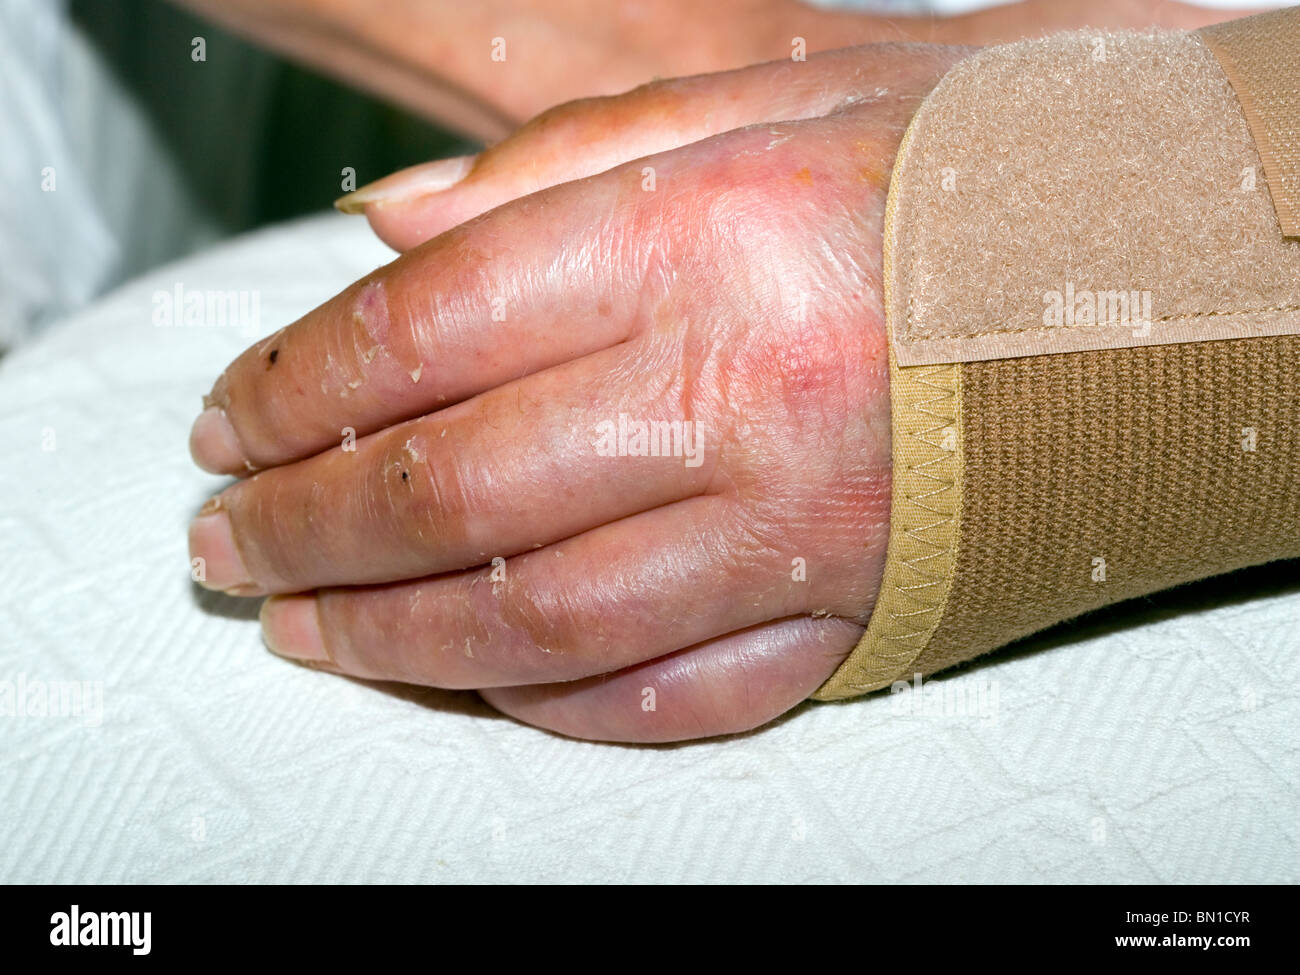 Les blessures de la main et du poignet après dépose de plâtre à six semaines,, Londres, Angleterre, Royaume-Uni, Europe Banque D'Images